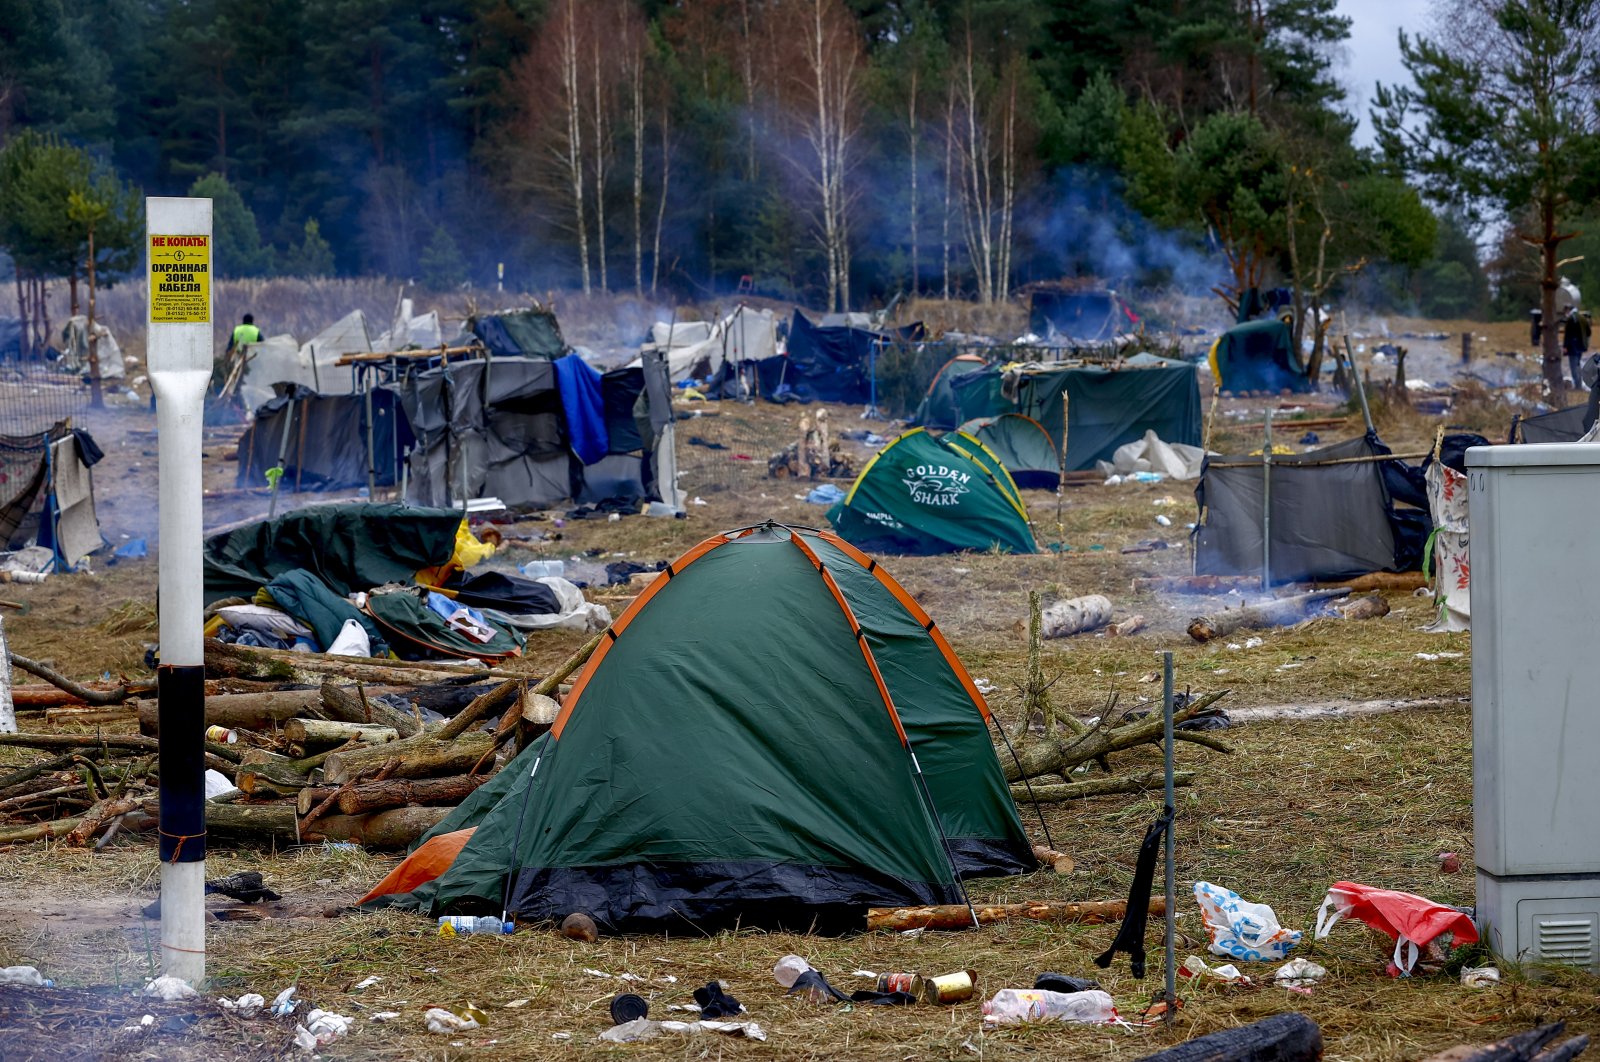 Belarus membersihkan kamp migran di perbatasan Polandia saat ratusan orang kembali ke rumah